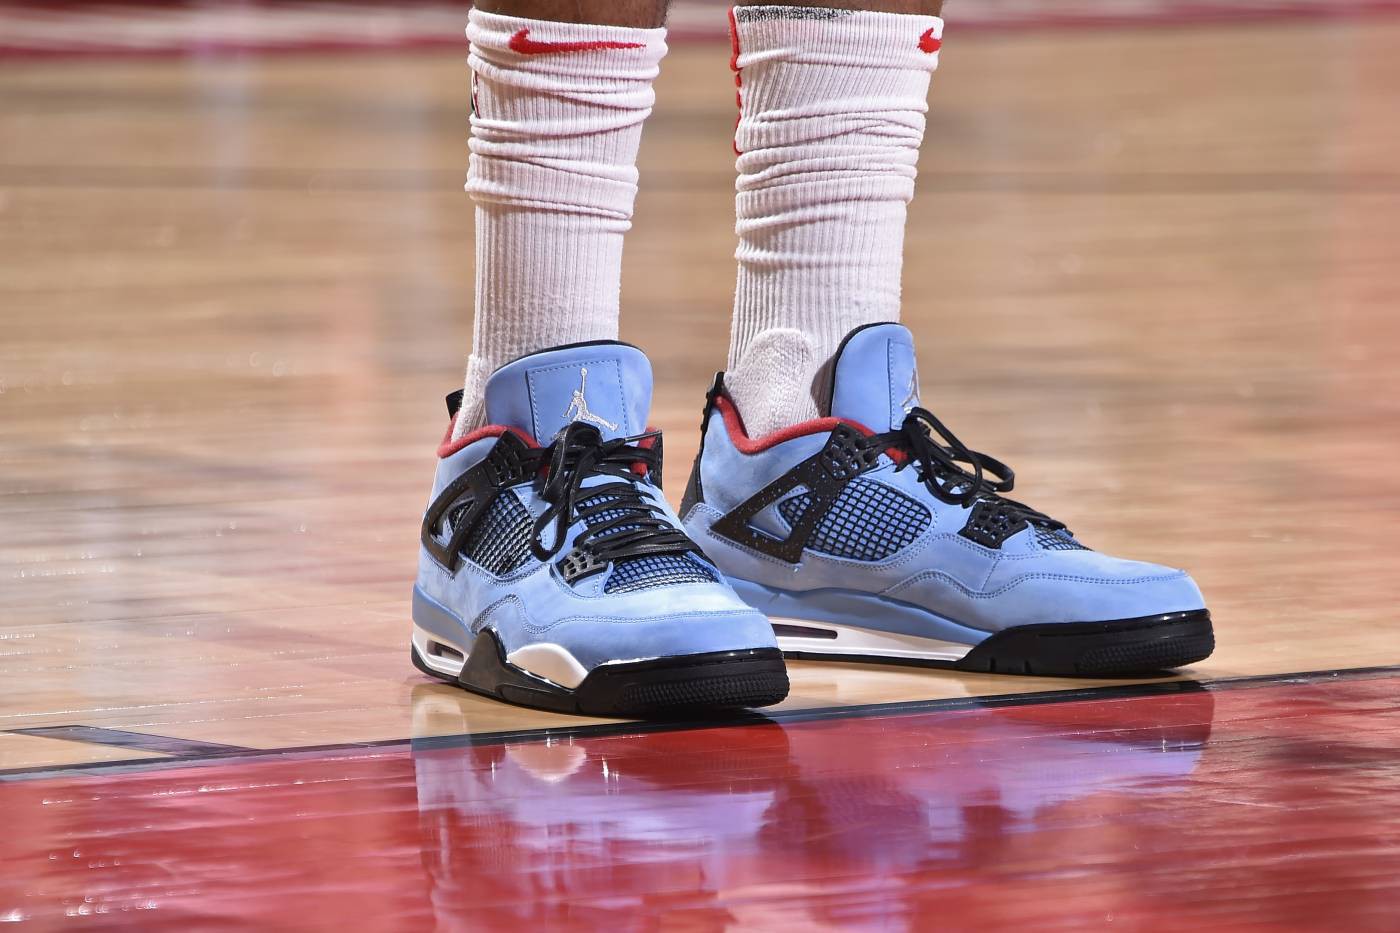 Chi tiết và đầy đủ các mẫu giày khủng của Thánh giày P.J. Tucker tại NBA Playoffs 2018 (kỳ 1) - Ảnh 1.